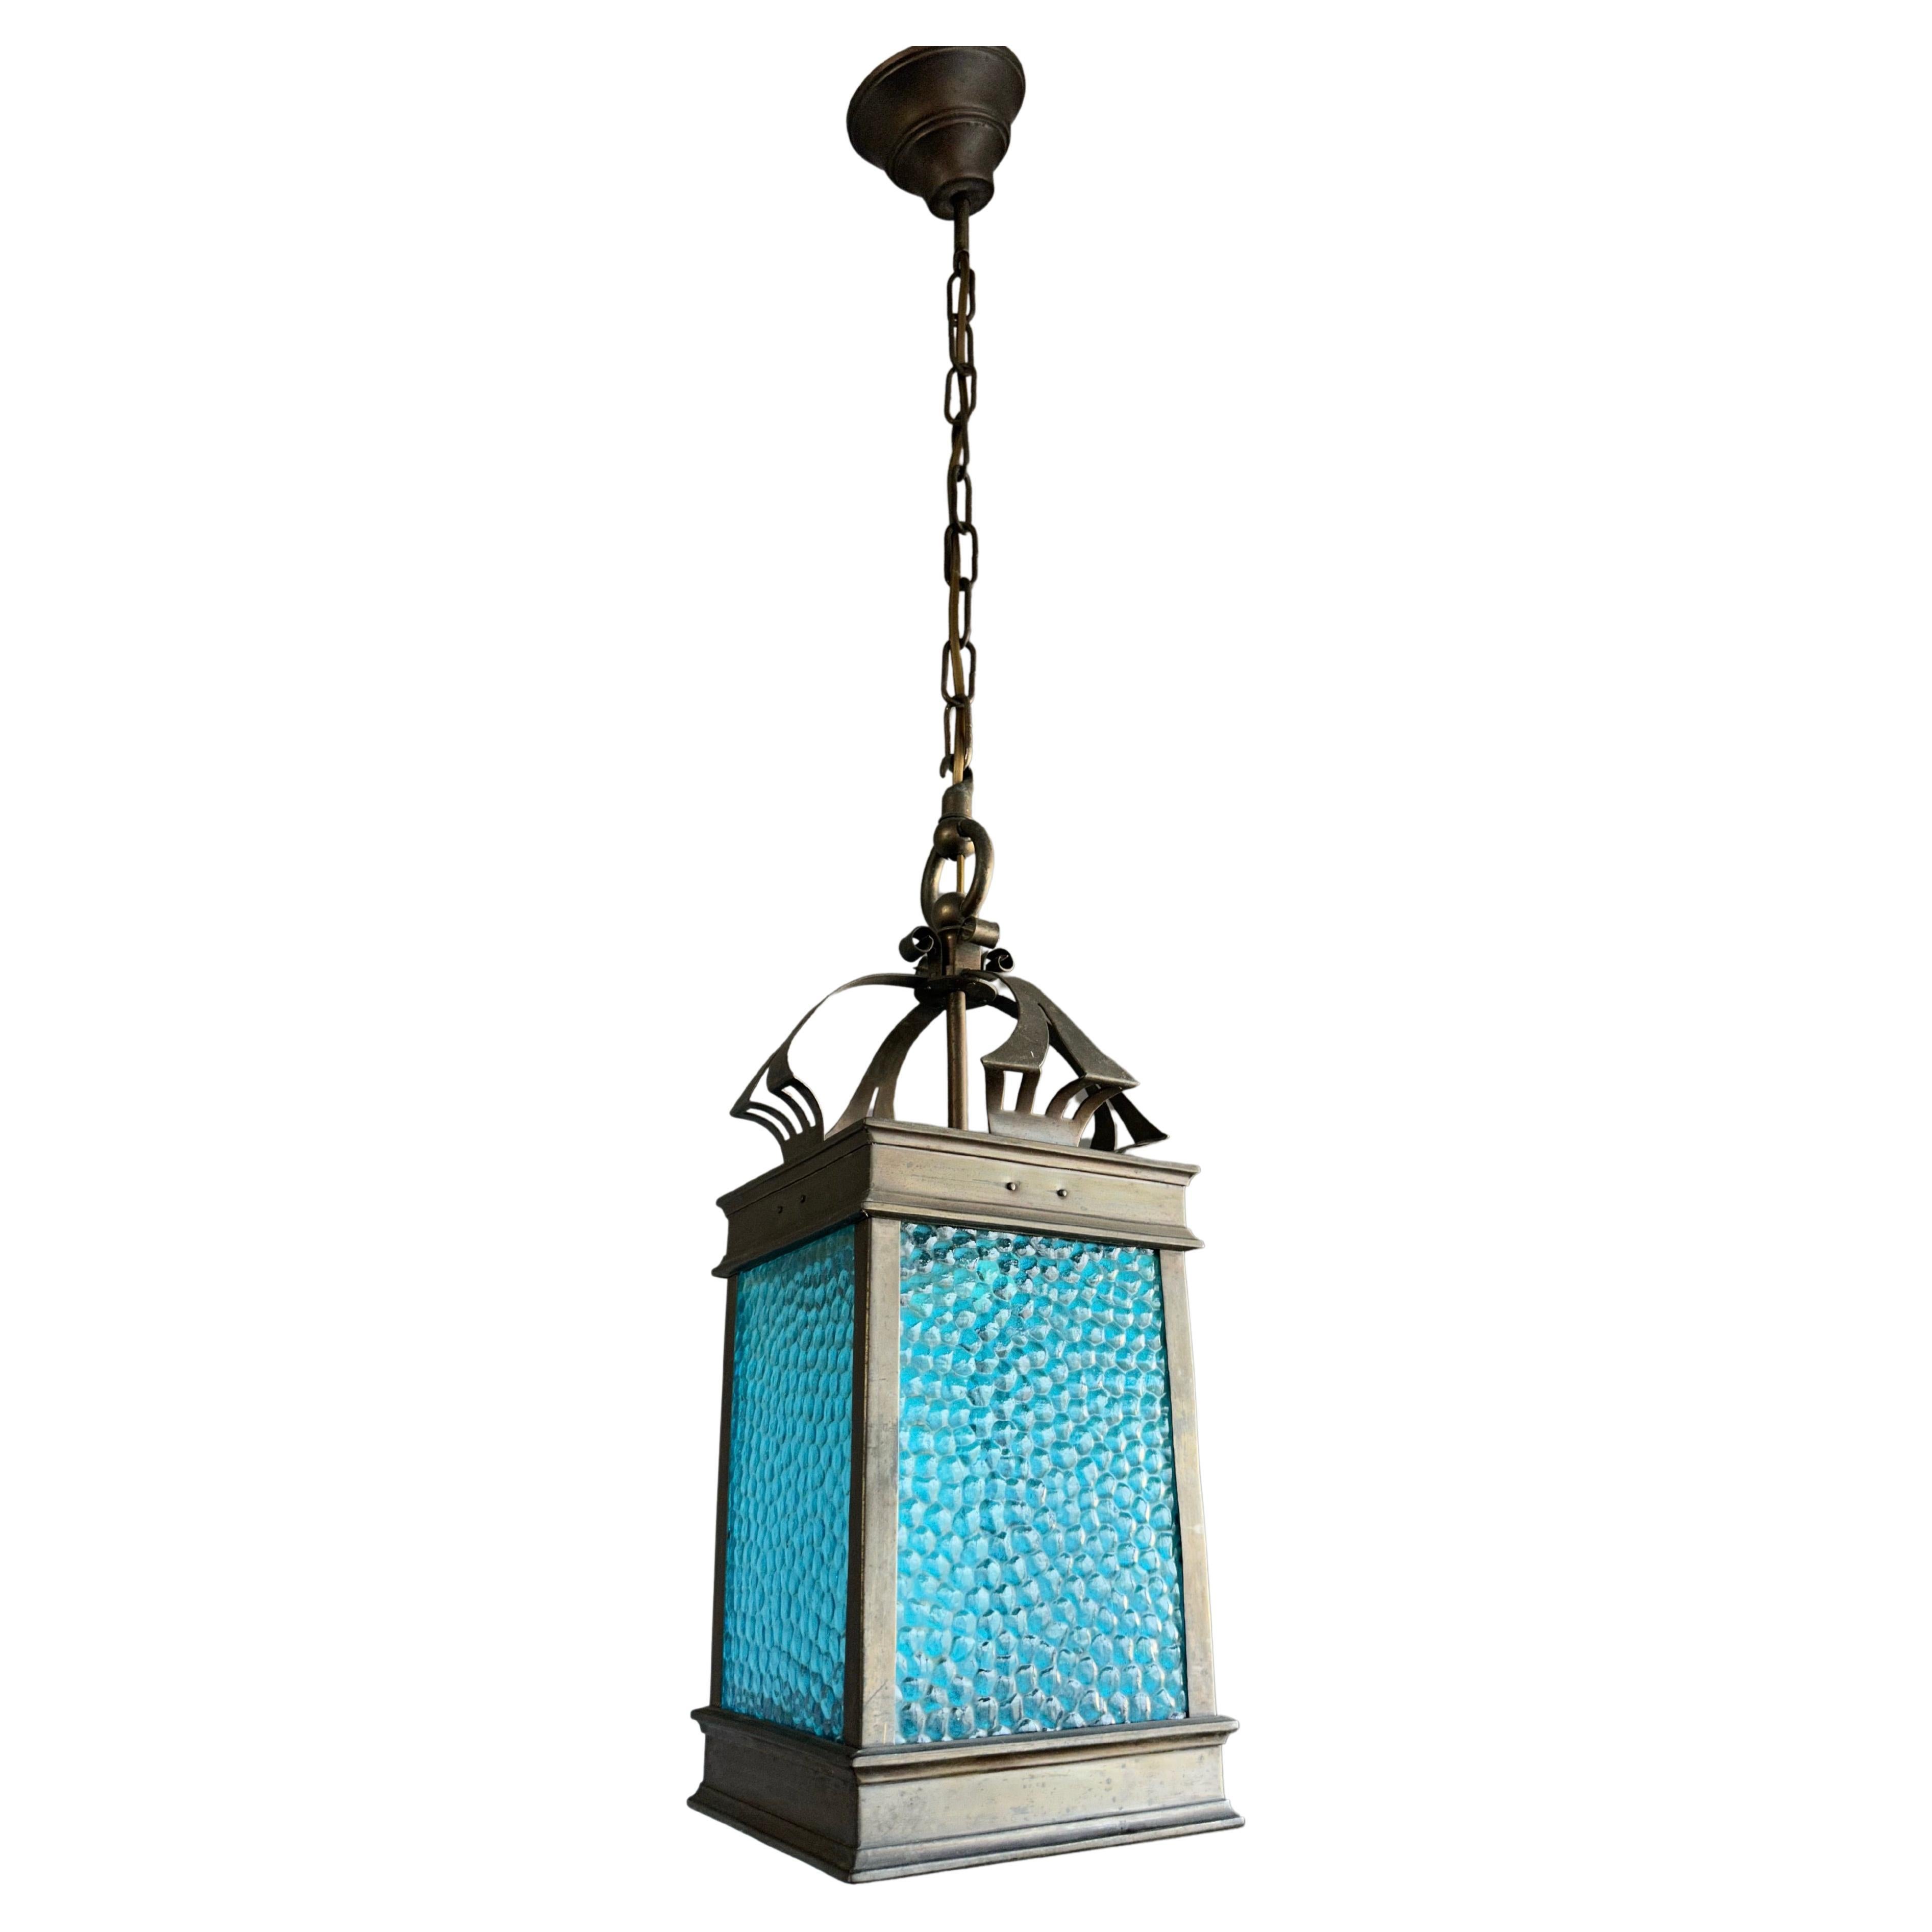 Rare lampe suspendue / lanterne Arts & Crafts. Cuivre et verre de cathédrale bleu de mer 